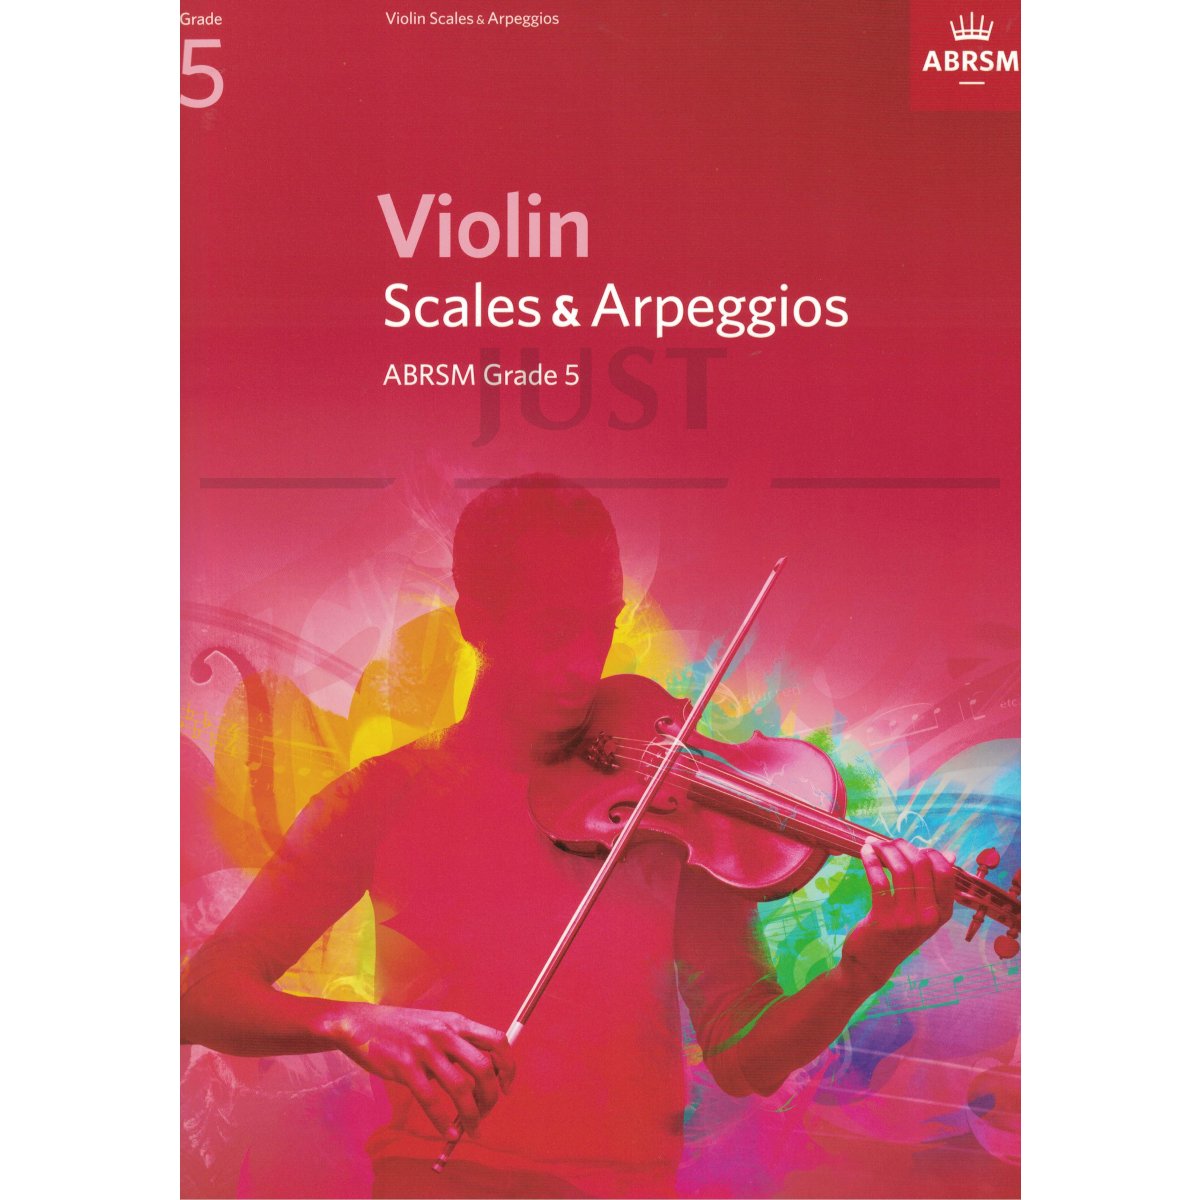 Scales and Arpeggios for Violin Grade 5